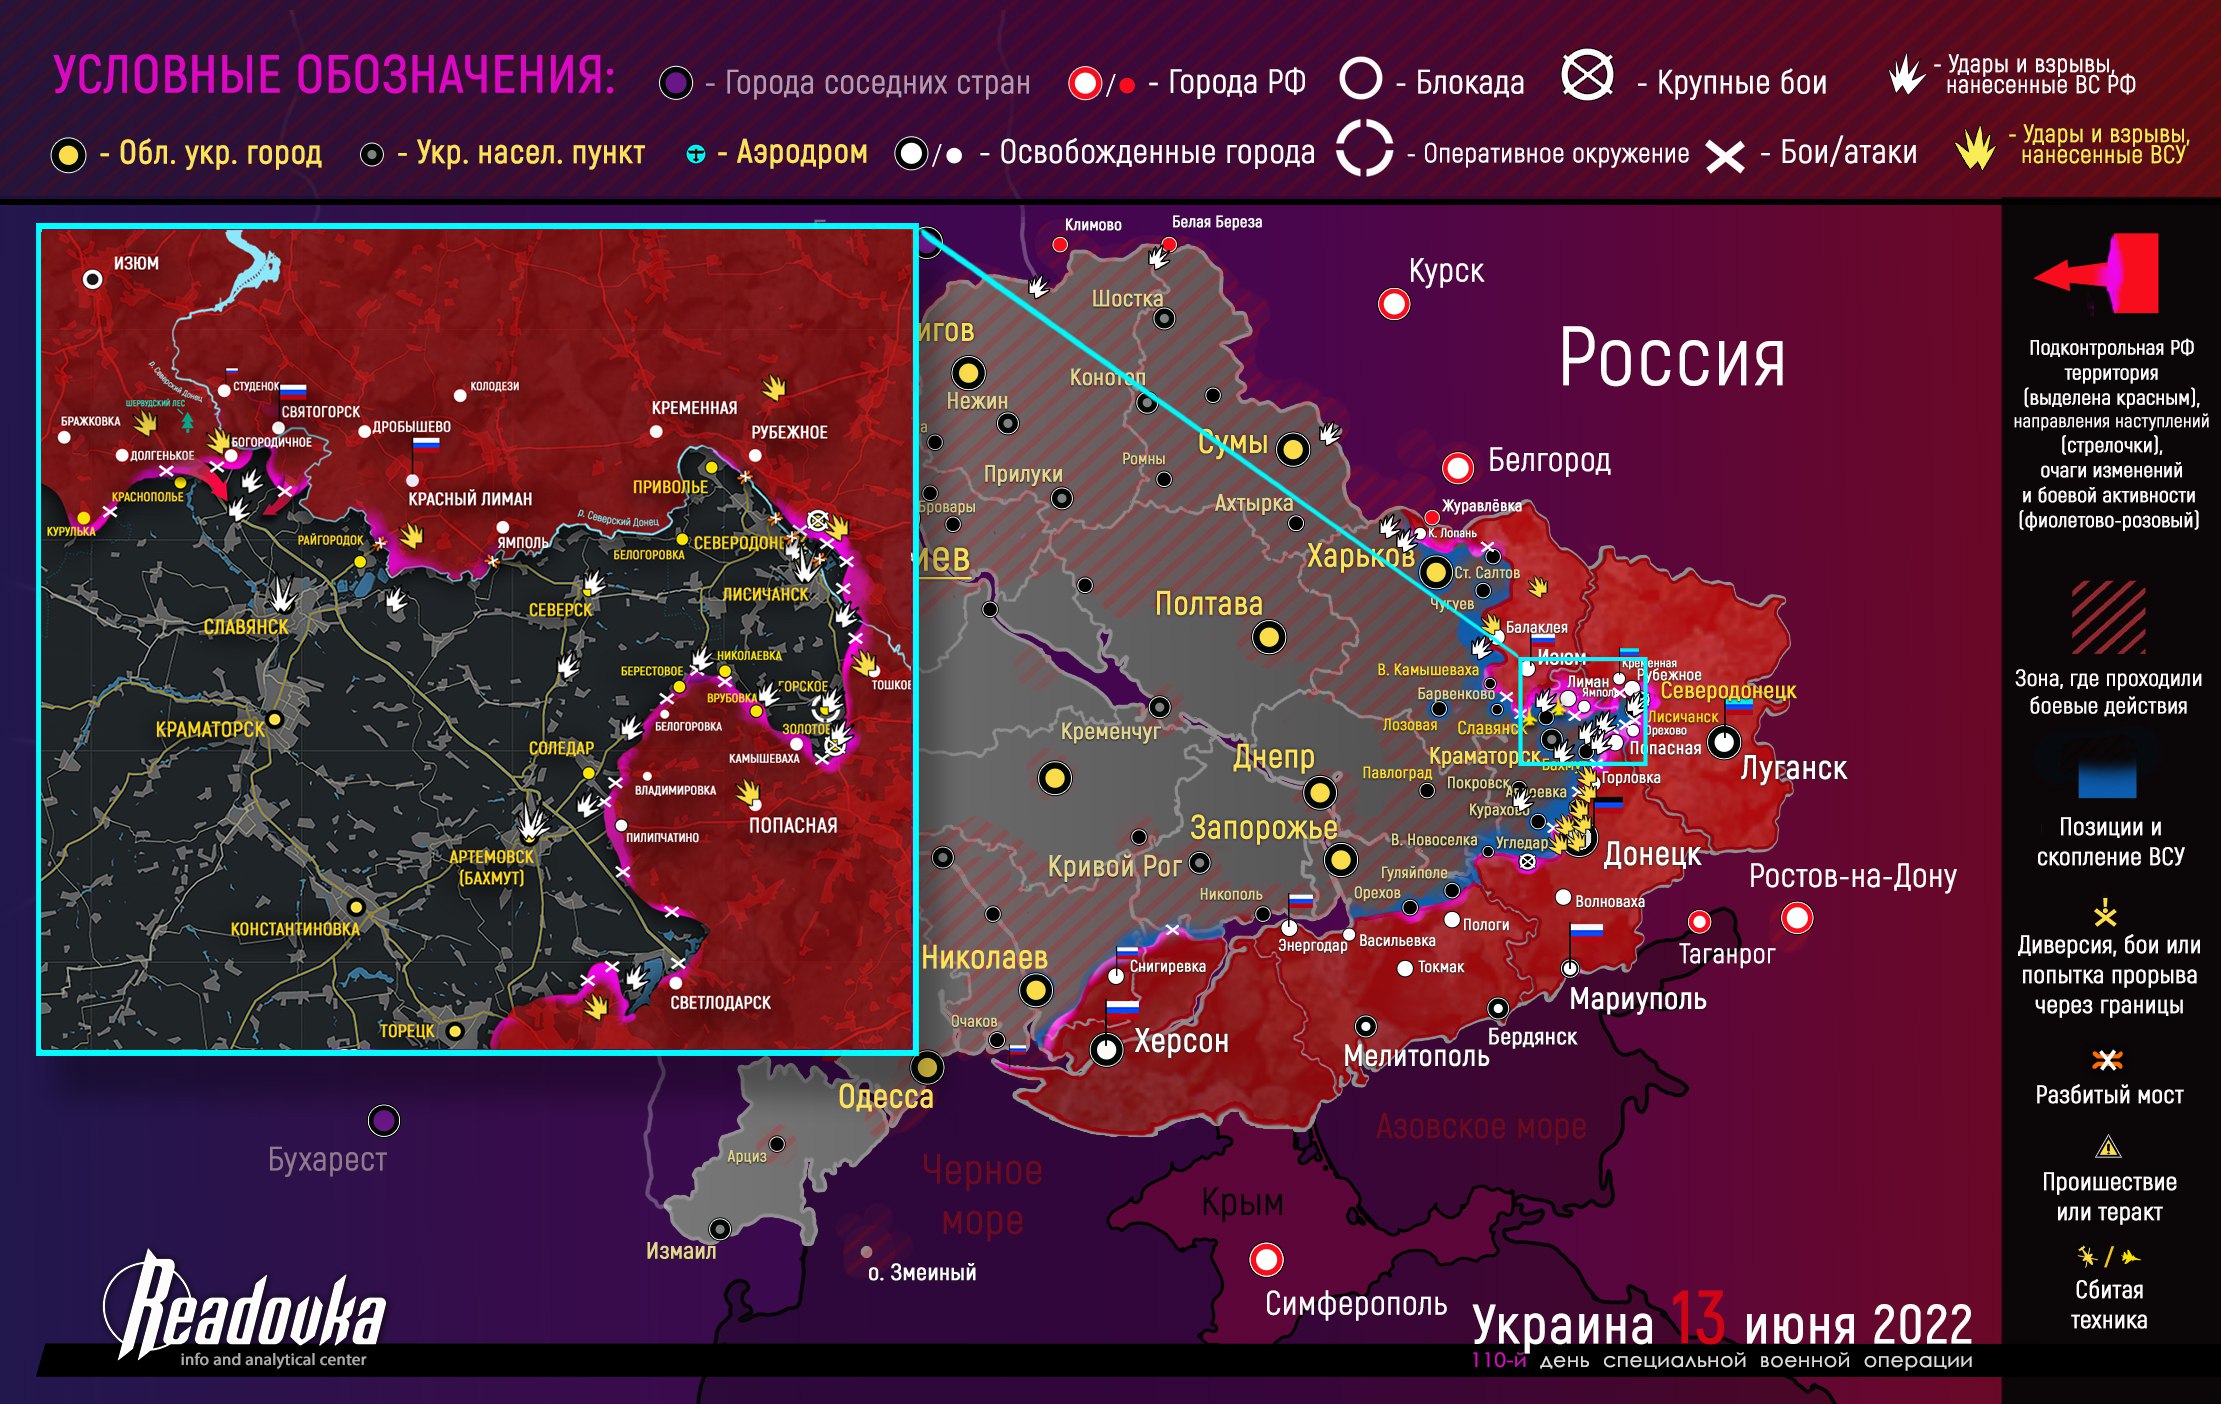 14 Haziran itibarıyla Ukrayna ve Donbas cephe hattında son durum